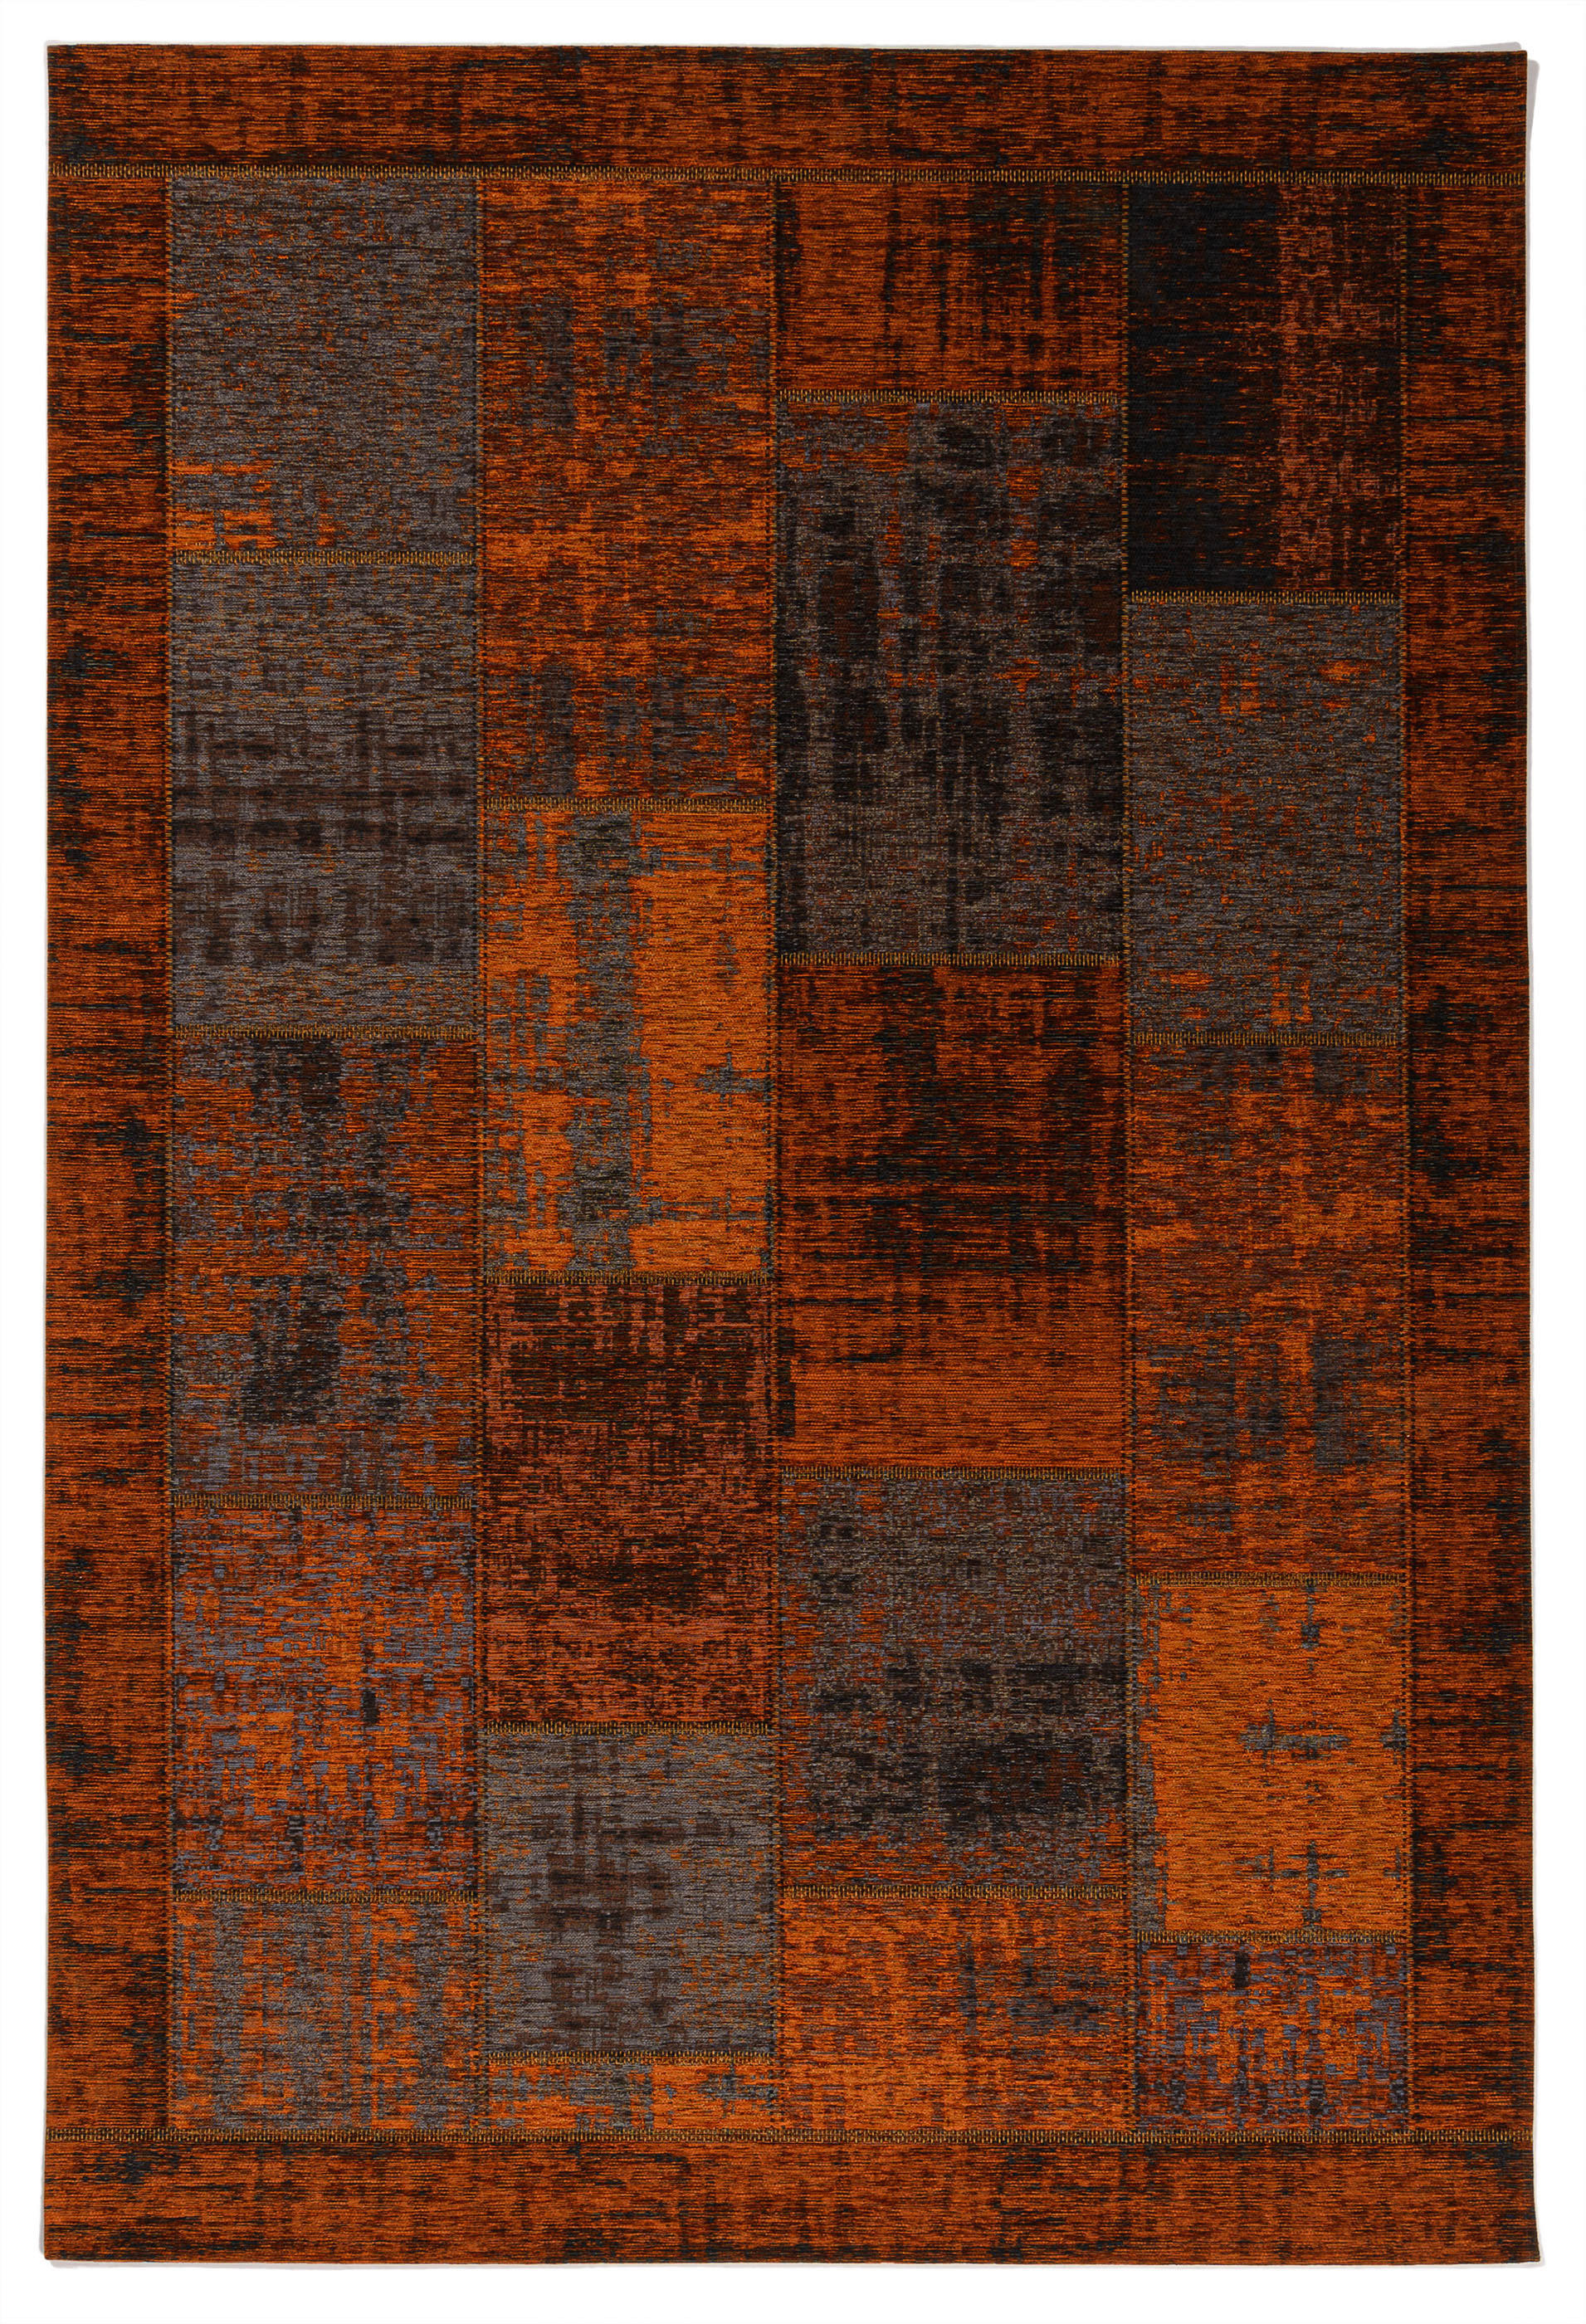 FLACHWEBETEPPICH  80/150 cm  Kupferfarben   - Kupferfarben, Trend, Textil (80/150cm) - Novel